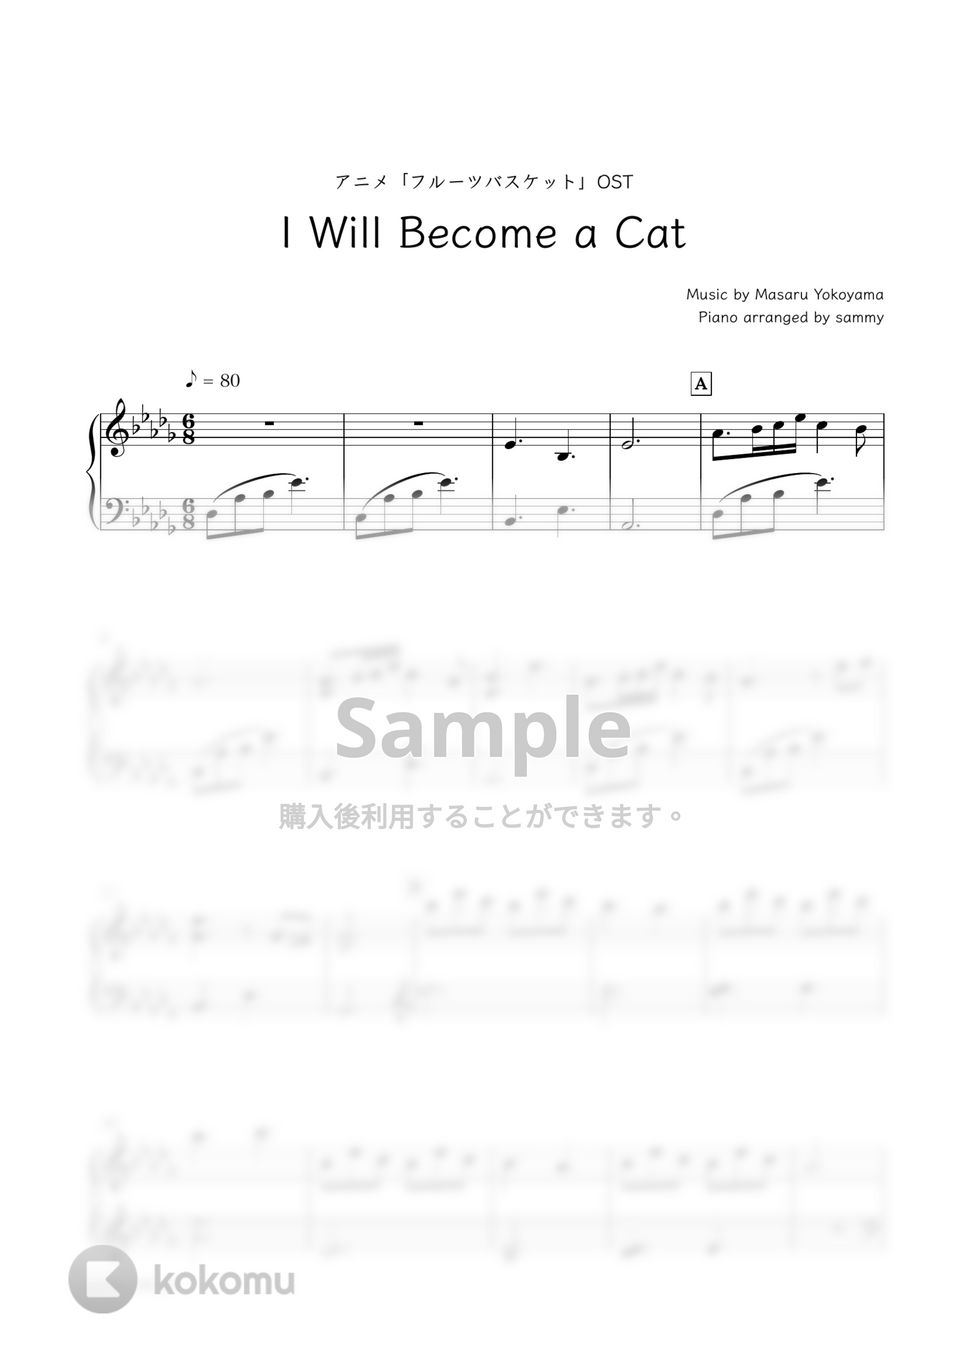 アニメ『フルーツバスケット』OST - I Will Become a Cat by sammy